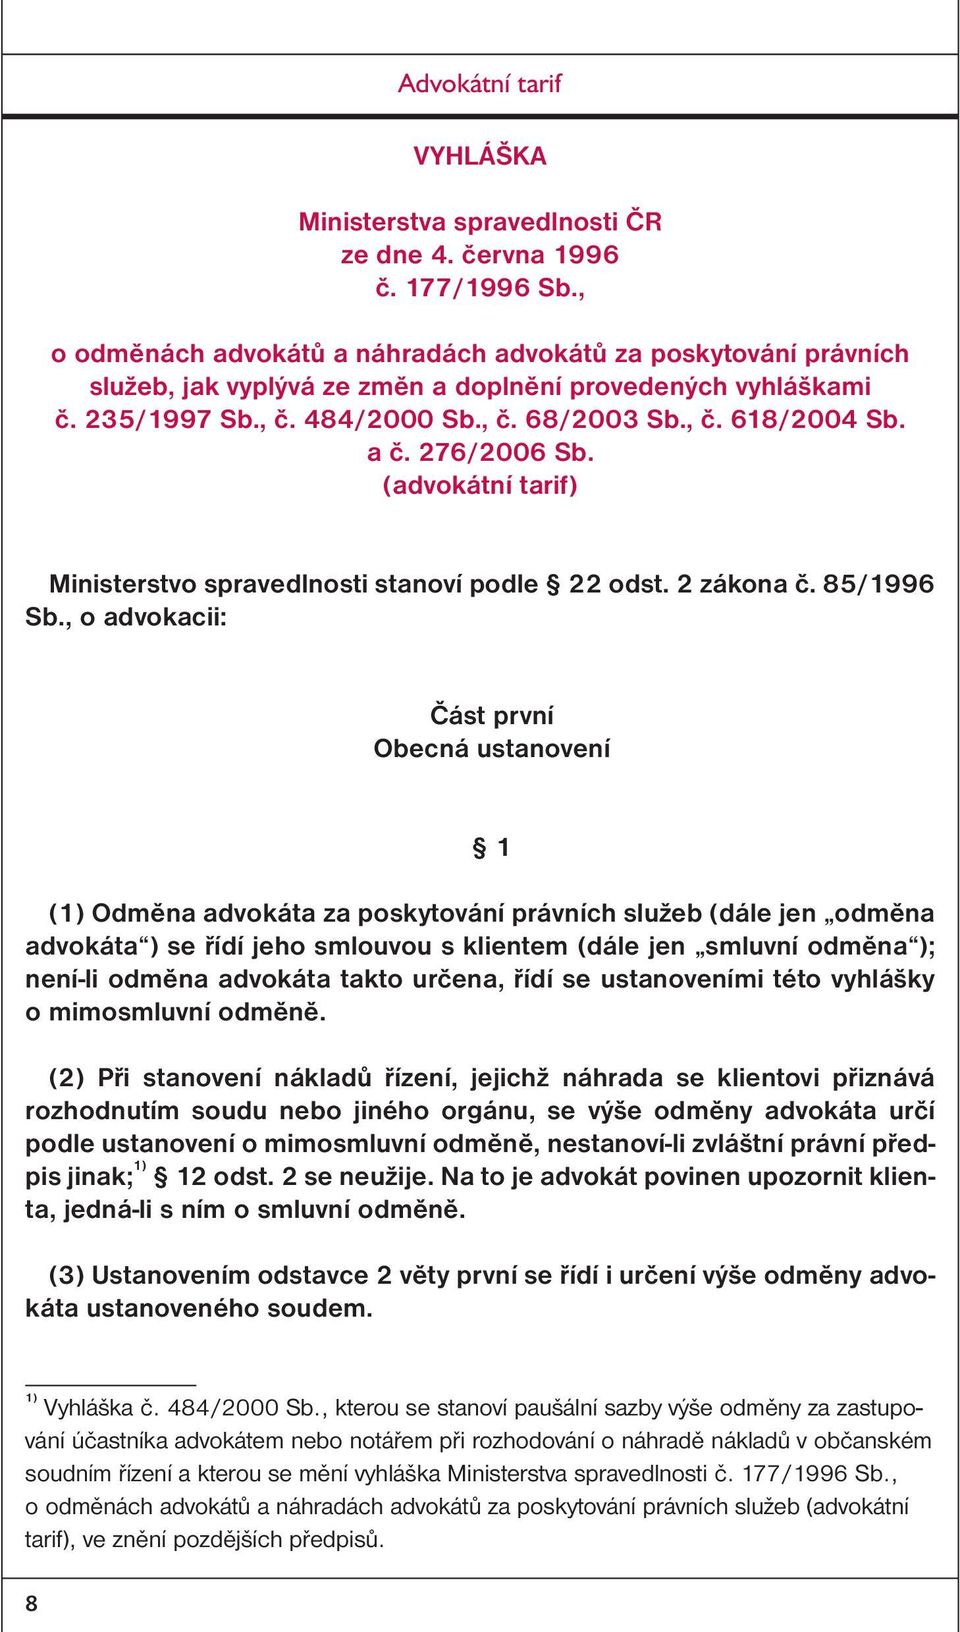 276/2006 Sb. (advokátní tarif) Ministerstvo spravedlnosti stanoví podle 22 odst. 2 zákona č. 85/1996 Sb.